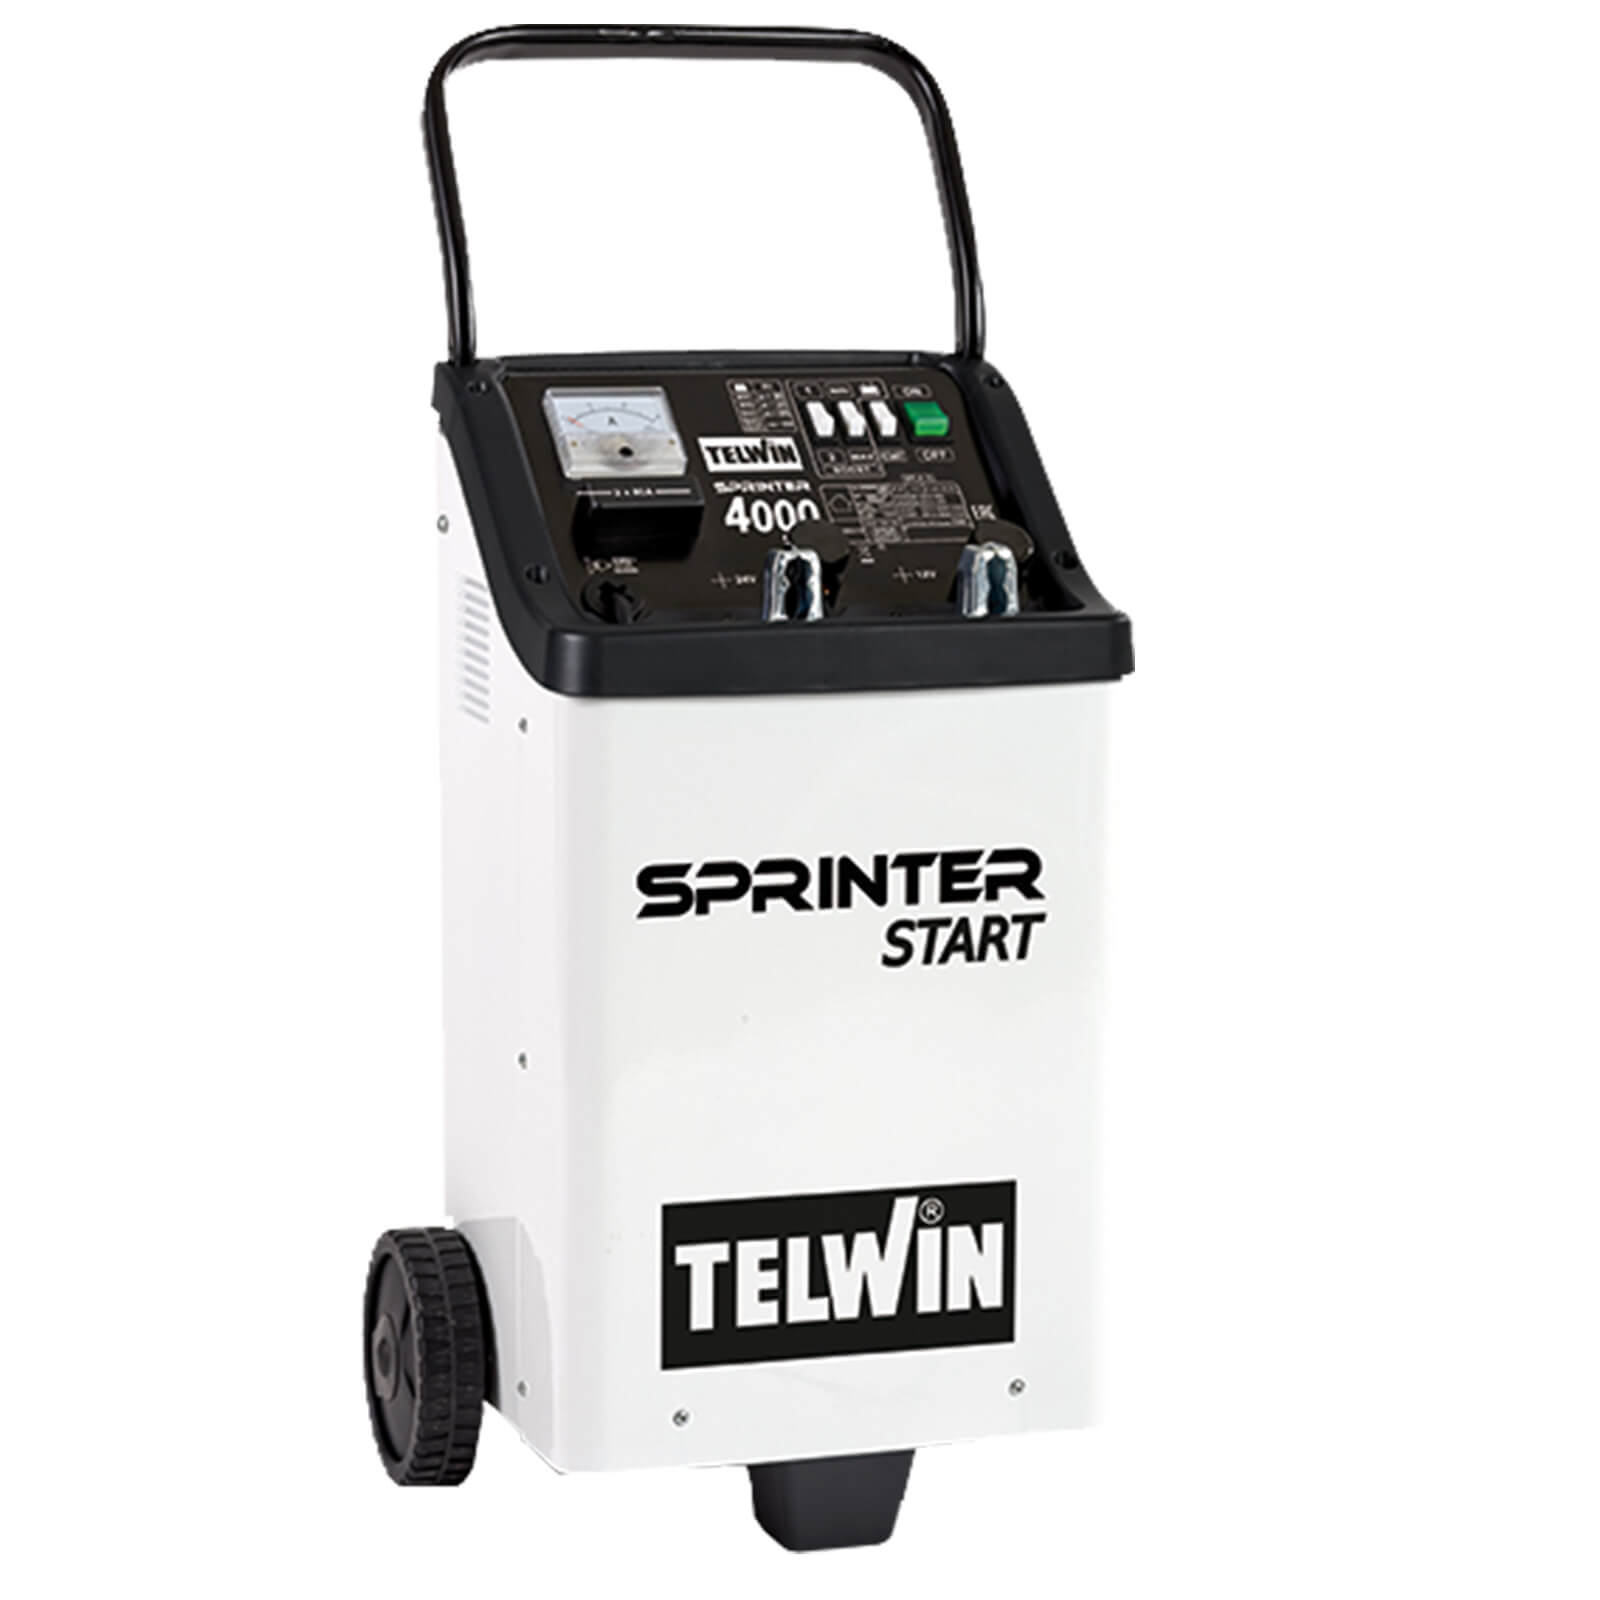 Telwin Elements SPRINTER 4000 START, 75A Ladestrom, 1000Ah, 300-400 A Startstrom von TELWIN